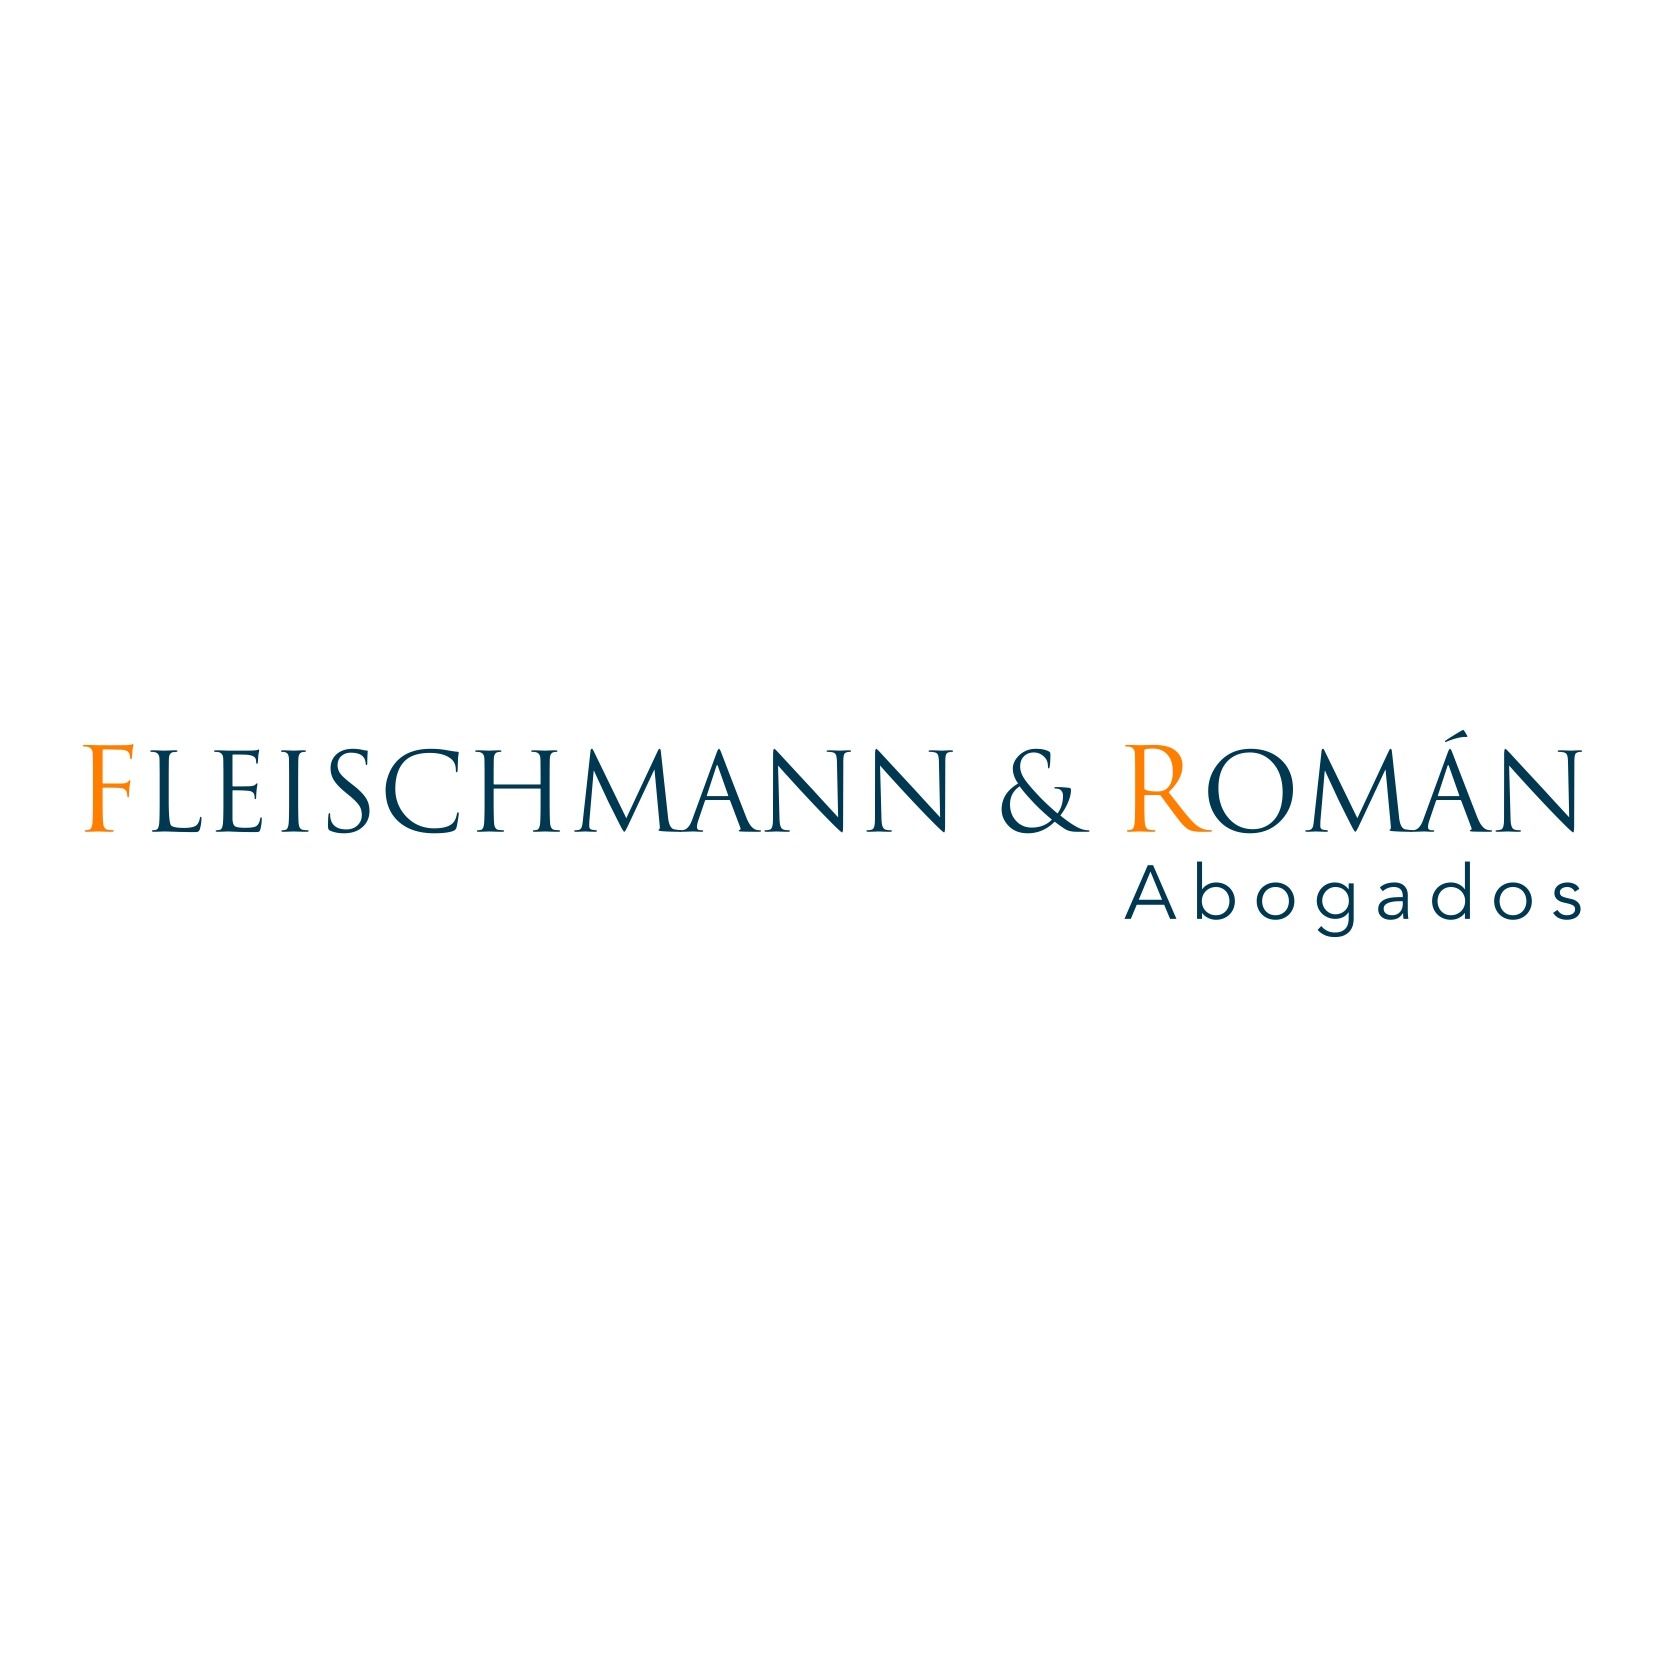 Fleischmann & Román Abogados